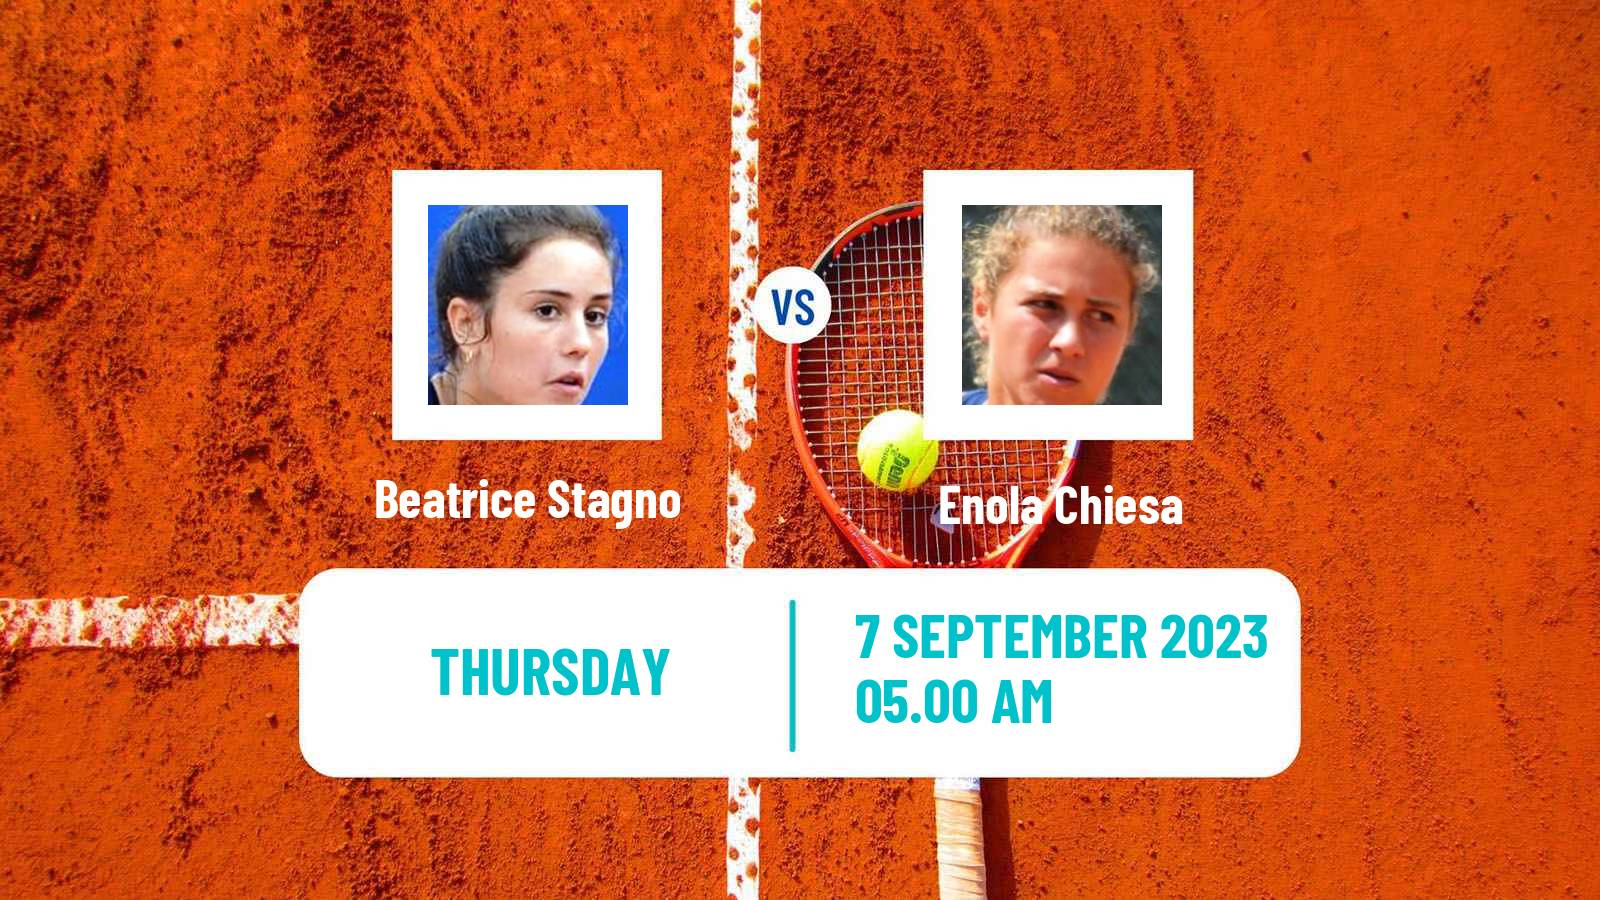 Tennis ITF W15 Fiano Romano Women Beatrice Stagno - Enola Chiesa